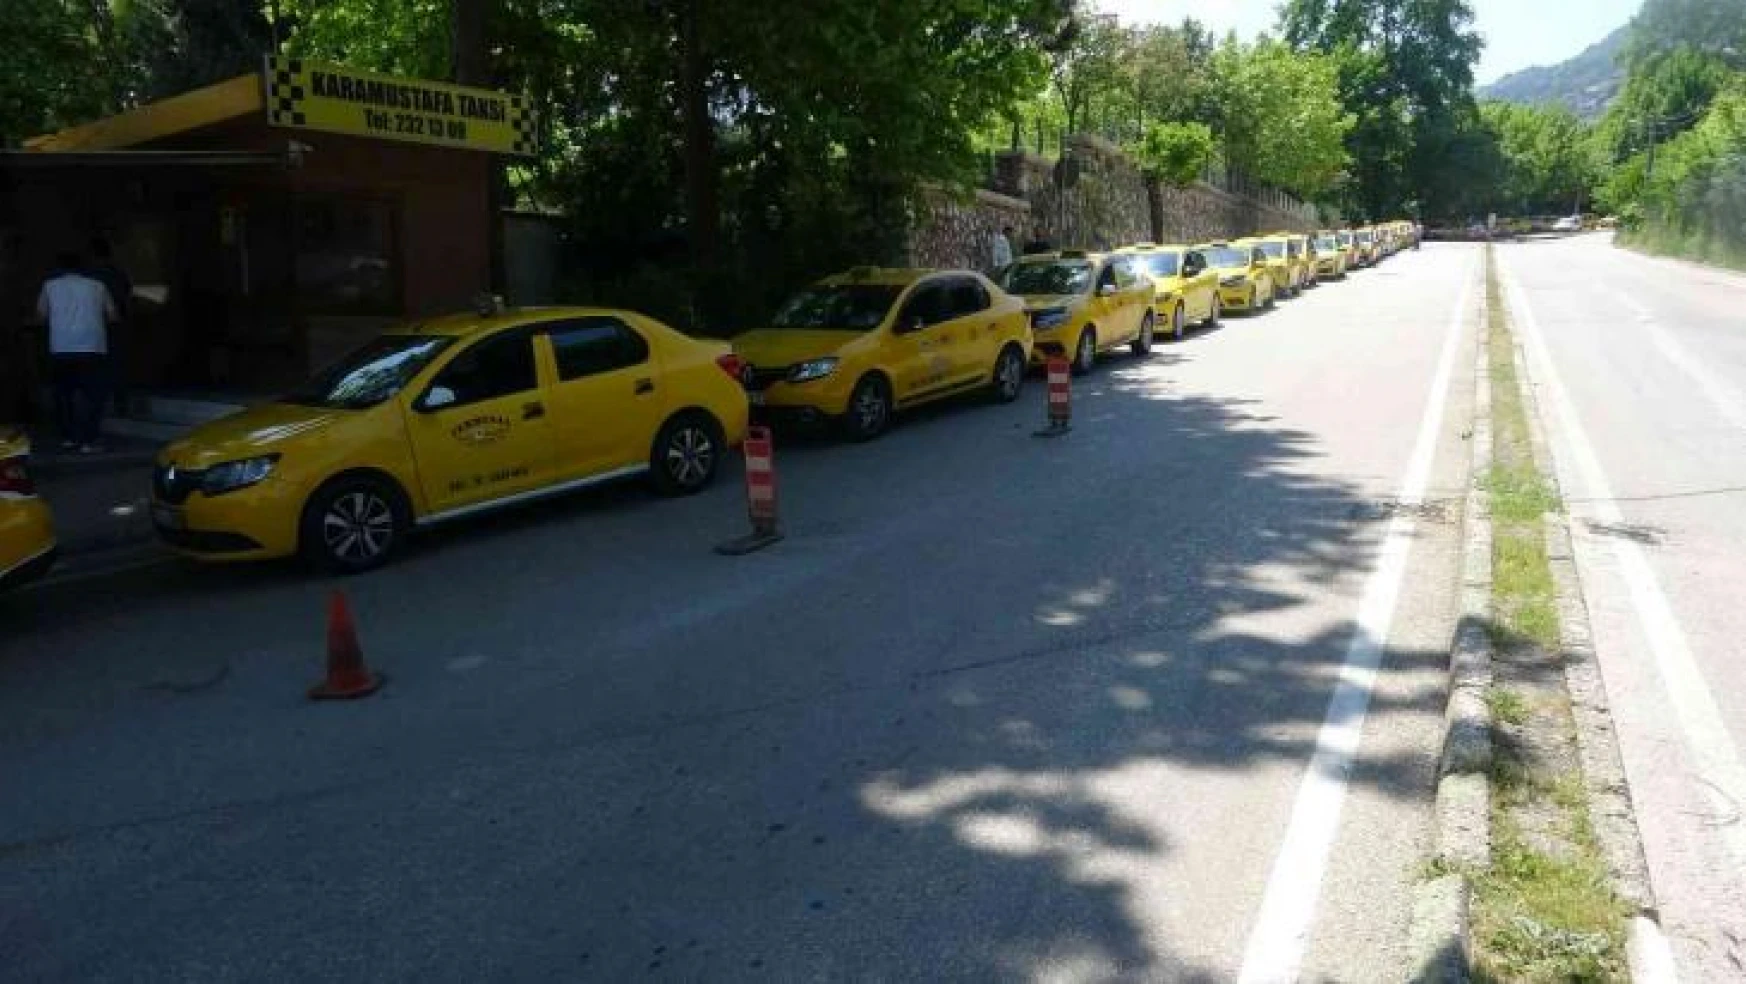 Bursa'da taksimetre güncelleme kuyruğu